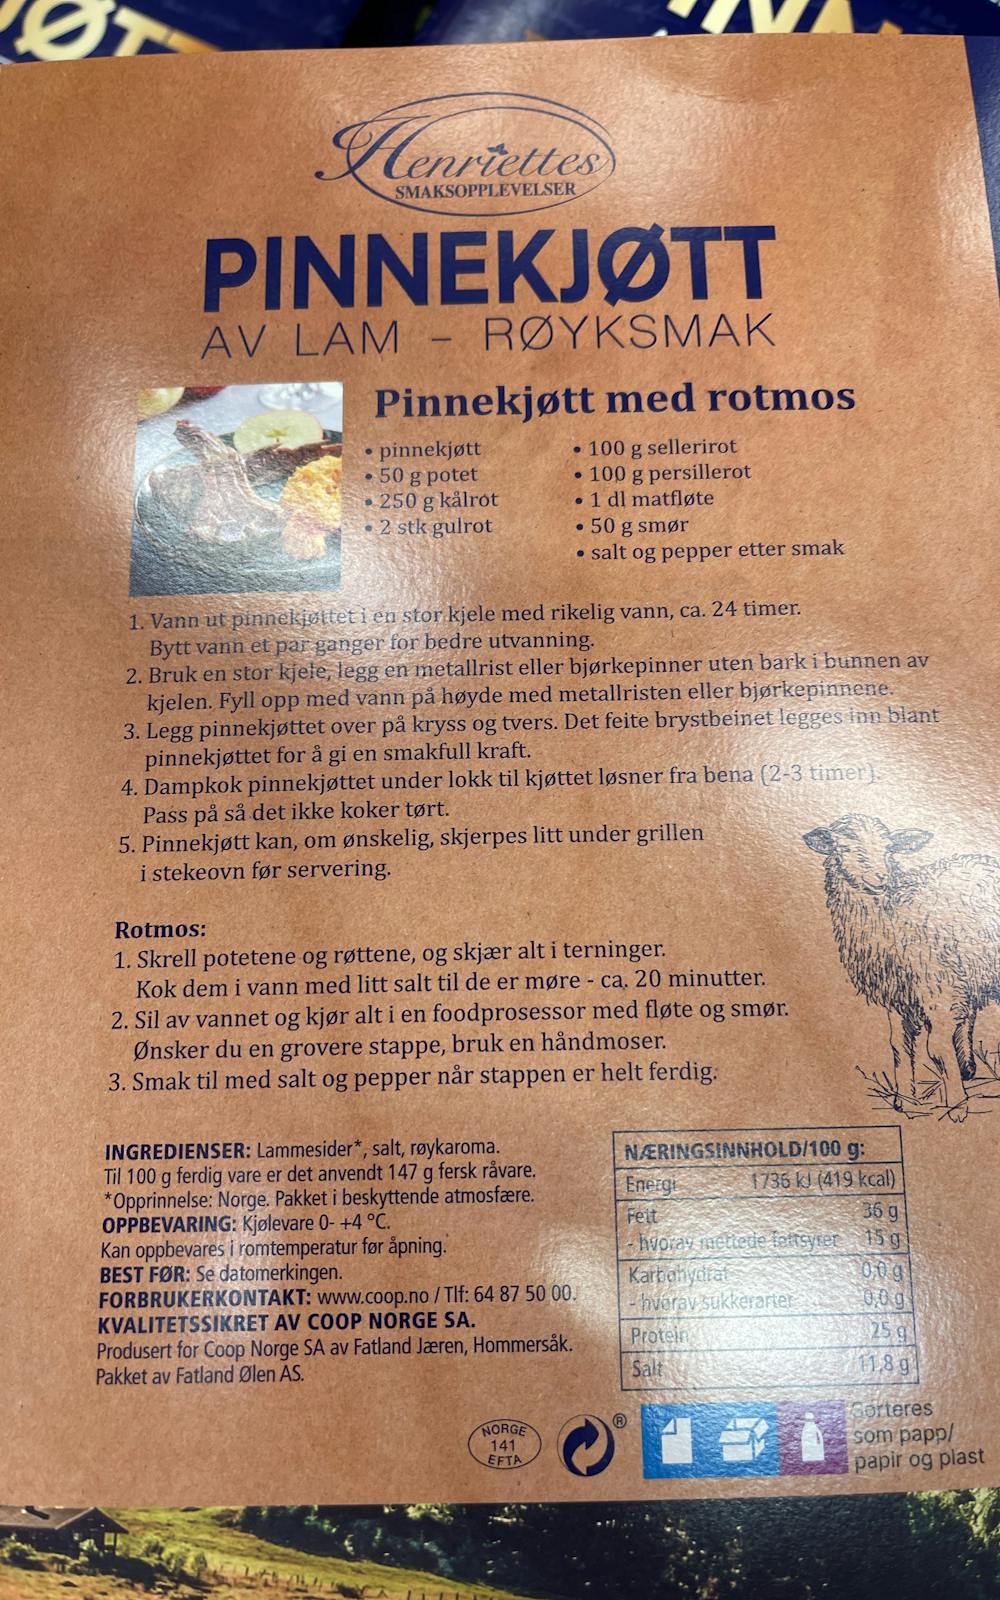 Ingredienslisten til Pinnekjøtt av lam, Henriettes smaksopplevelser